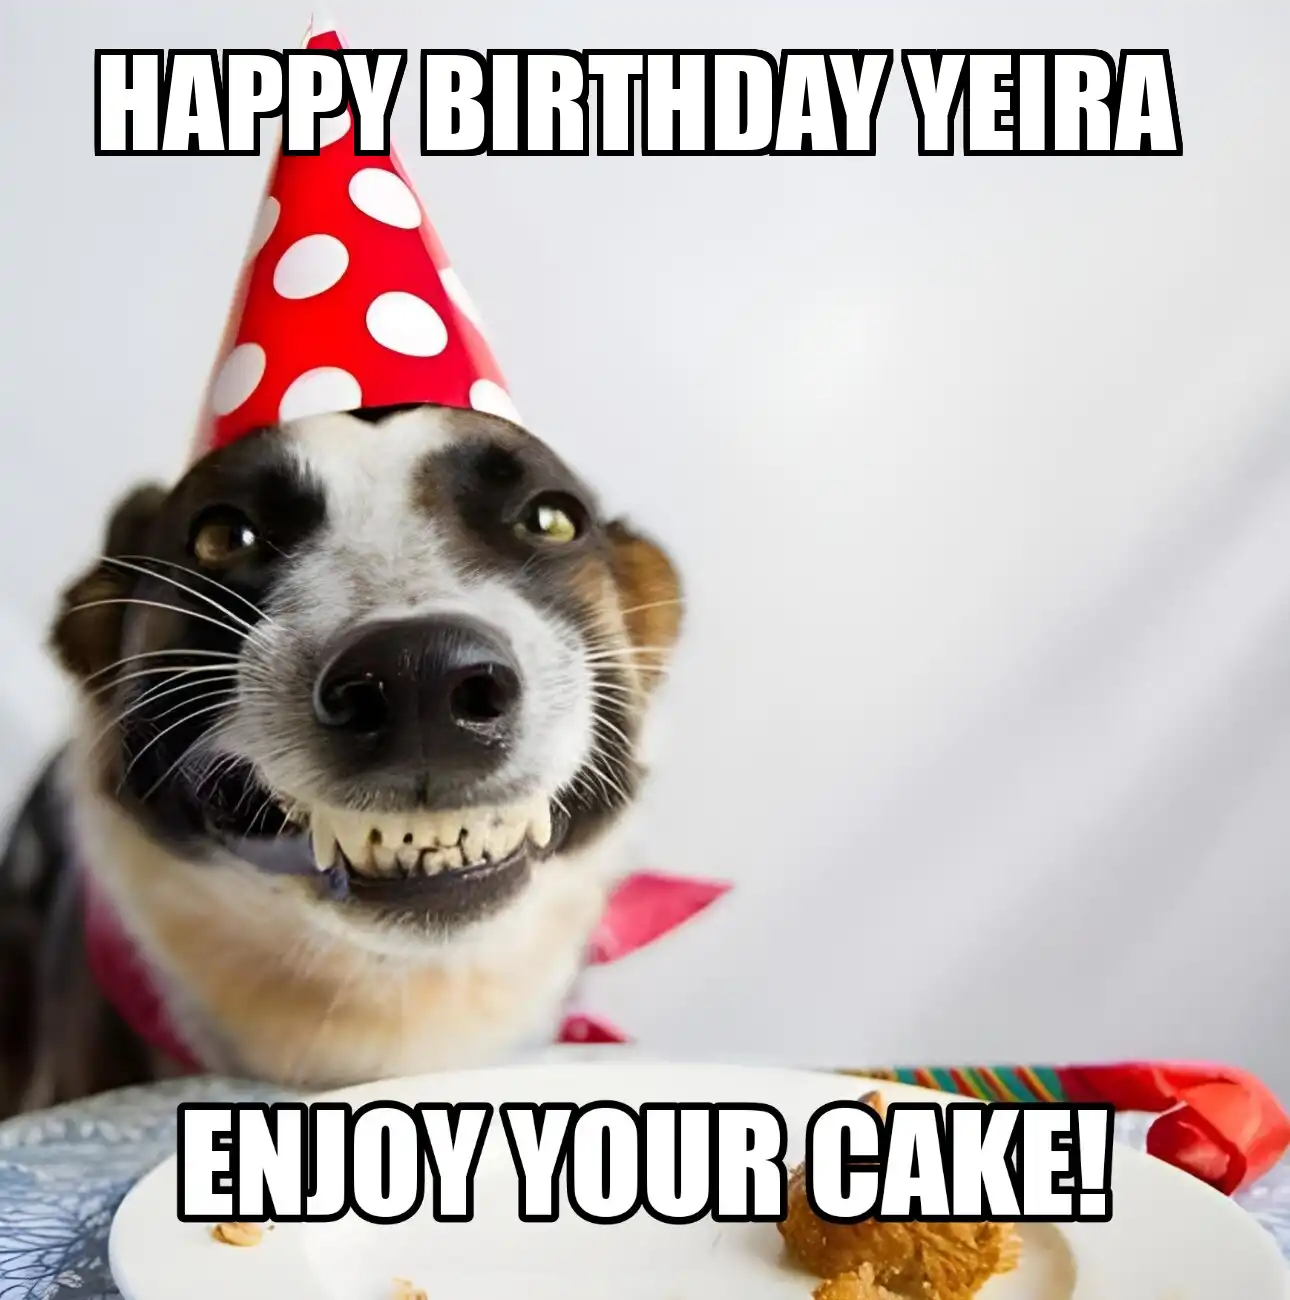 Happy Birthday Yeira Enjoy Your Cake Dog Meme